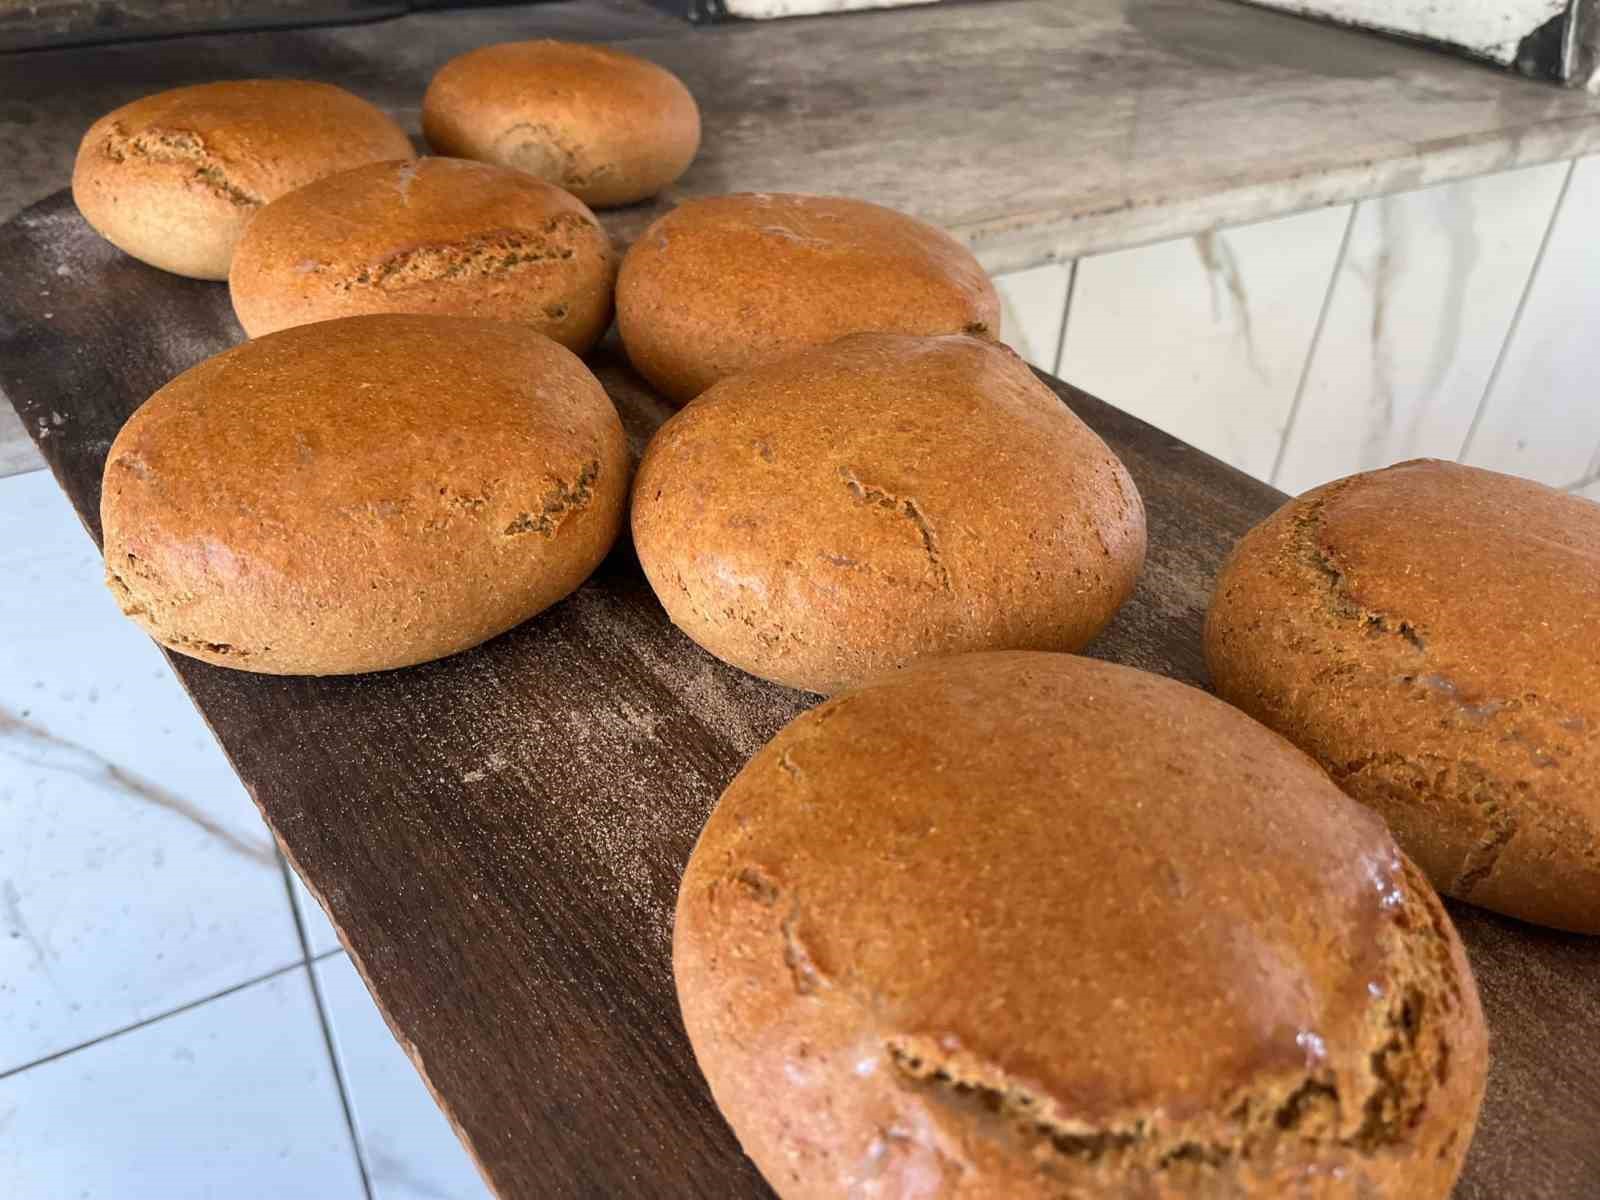 Geçmişi 12 bin yıl öncesine dayanan siyezden yapılan ekmekler, diyabet hastalarından büyük ilgi görüyor